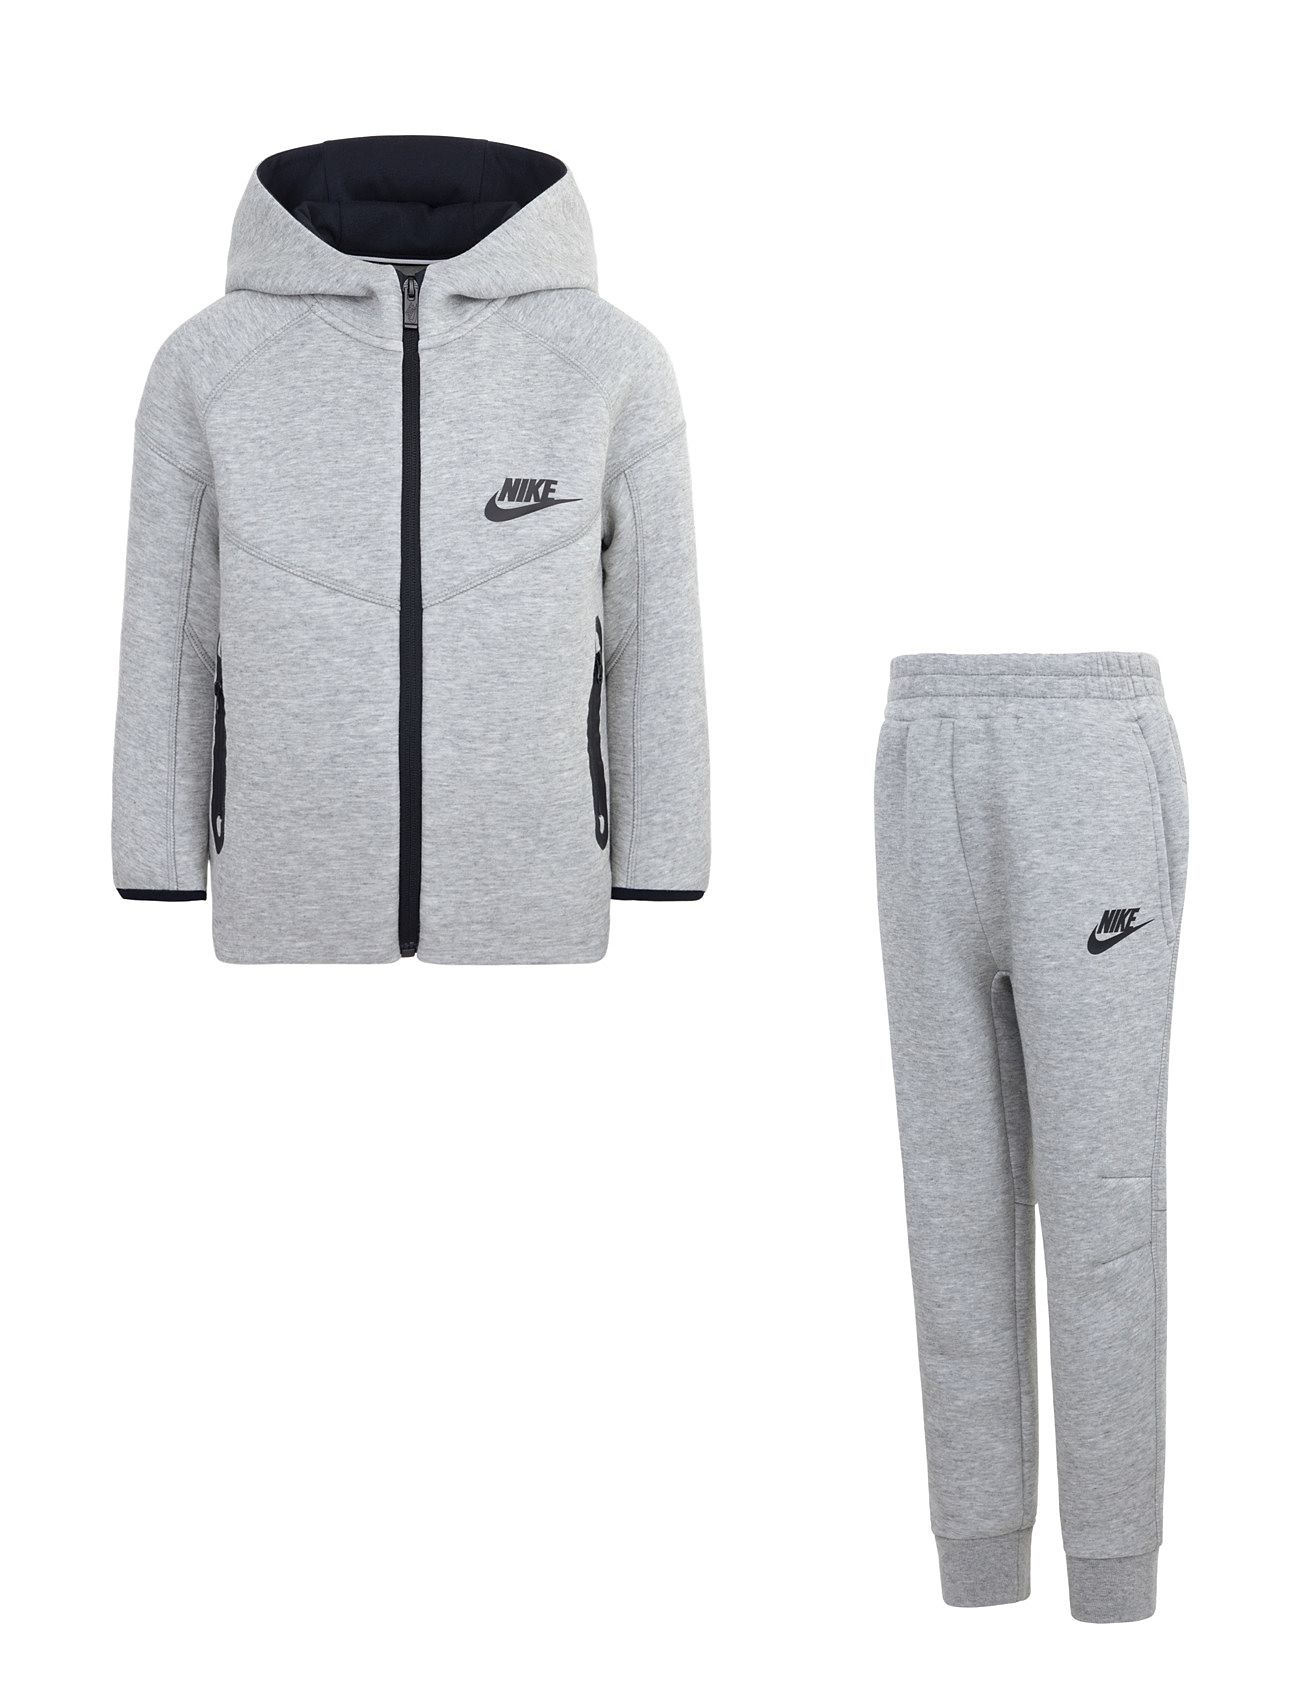 Nike Sportswear Big Kids Tracksuit, 2 Piece Set - Macy's